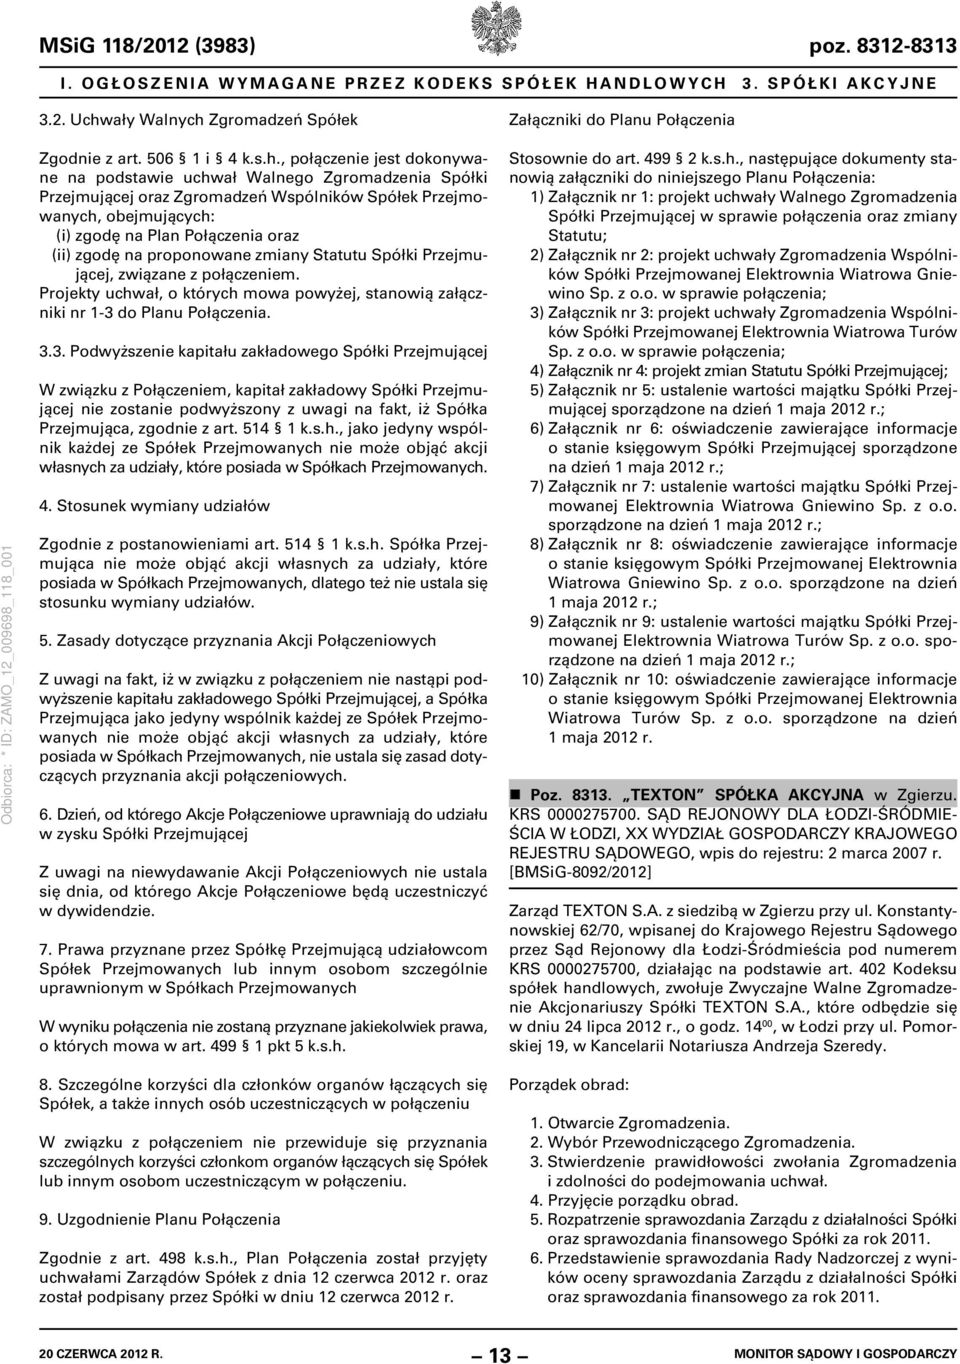 Zgromadzeń Spółek Załączniki do Planu Połączenia Zgodnie z art. 506 1 i 4 k.s.h.